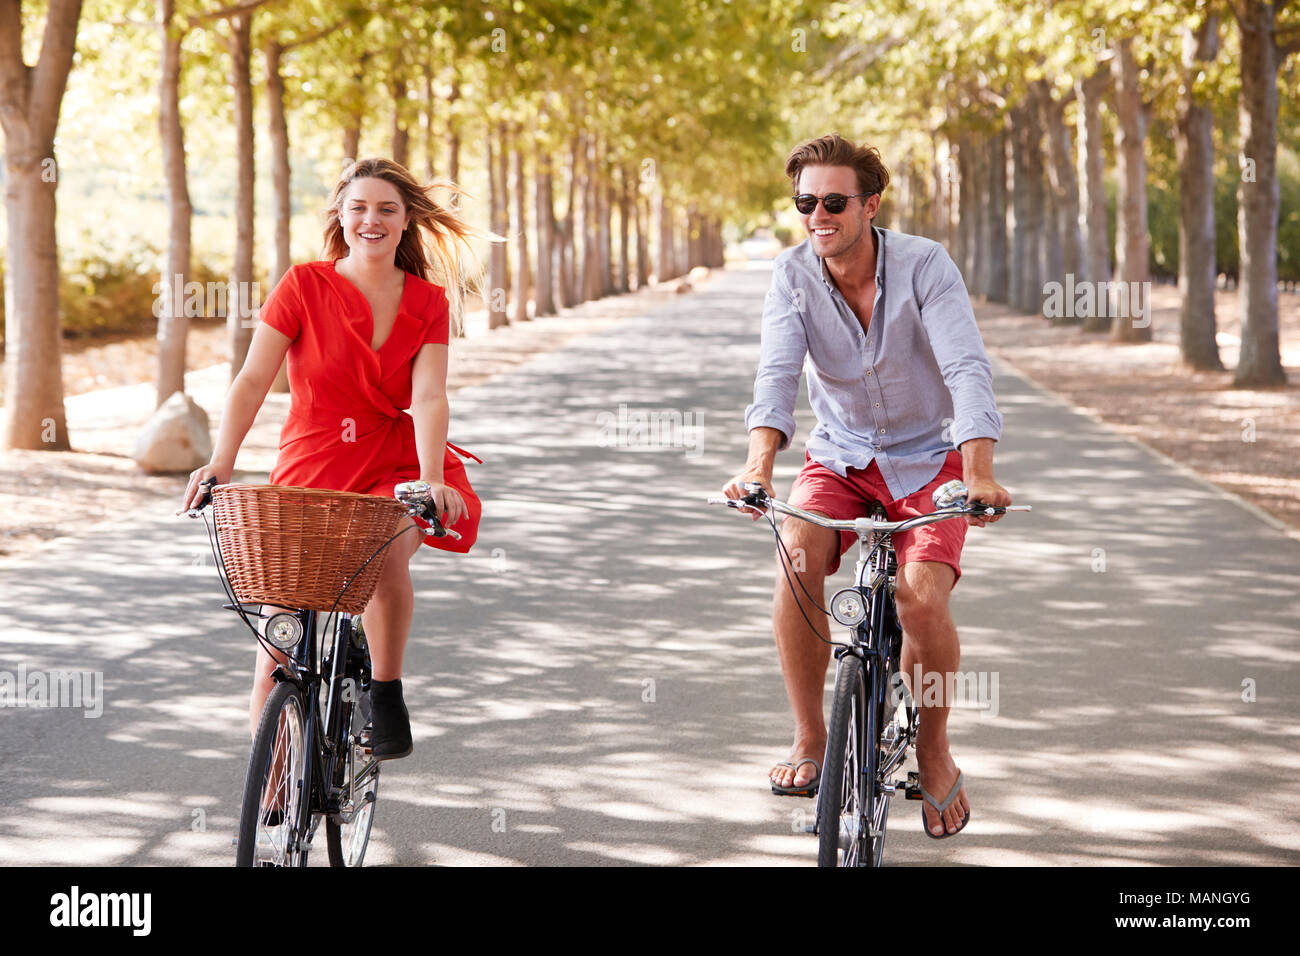 Les jeunes adultes blanc couple riding bikes sur une route bordée d'arbres Banque D'Images